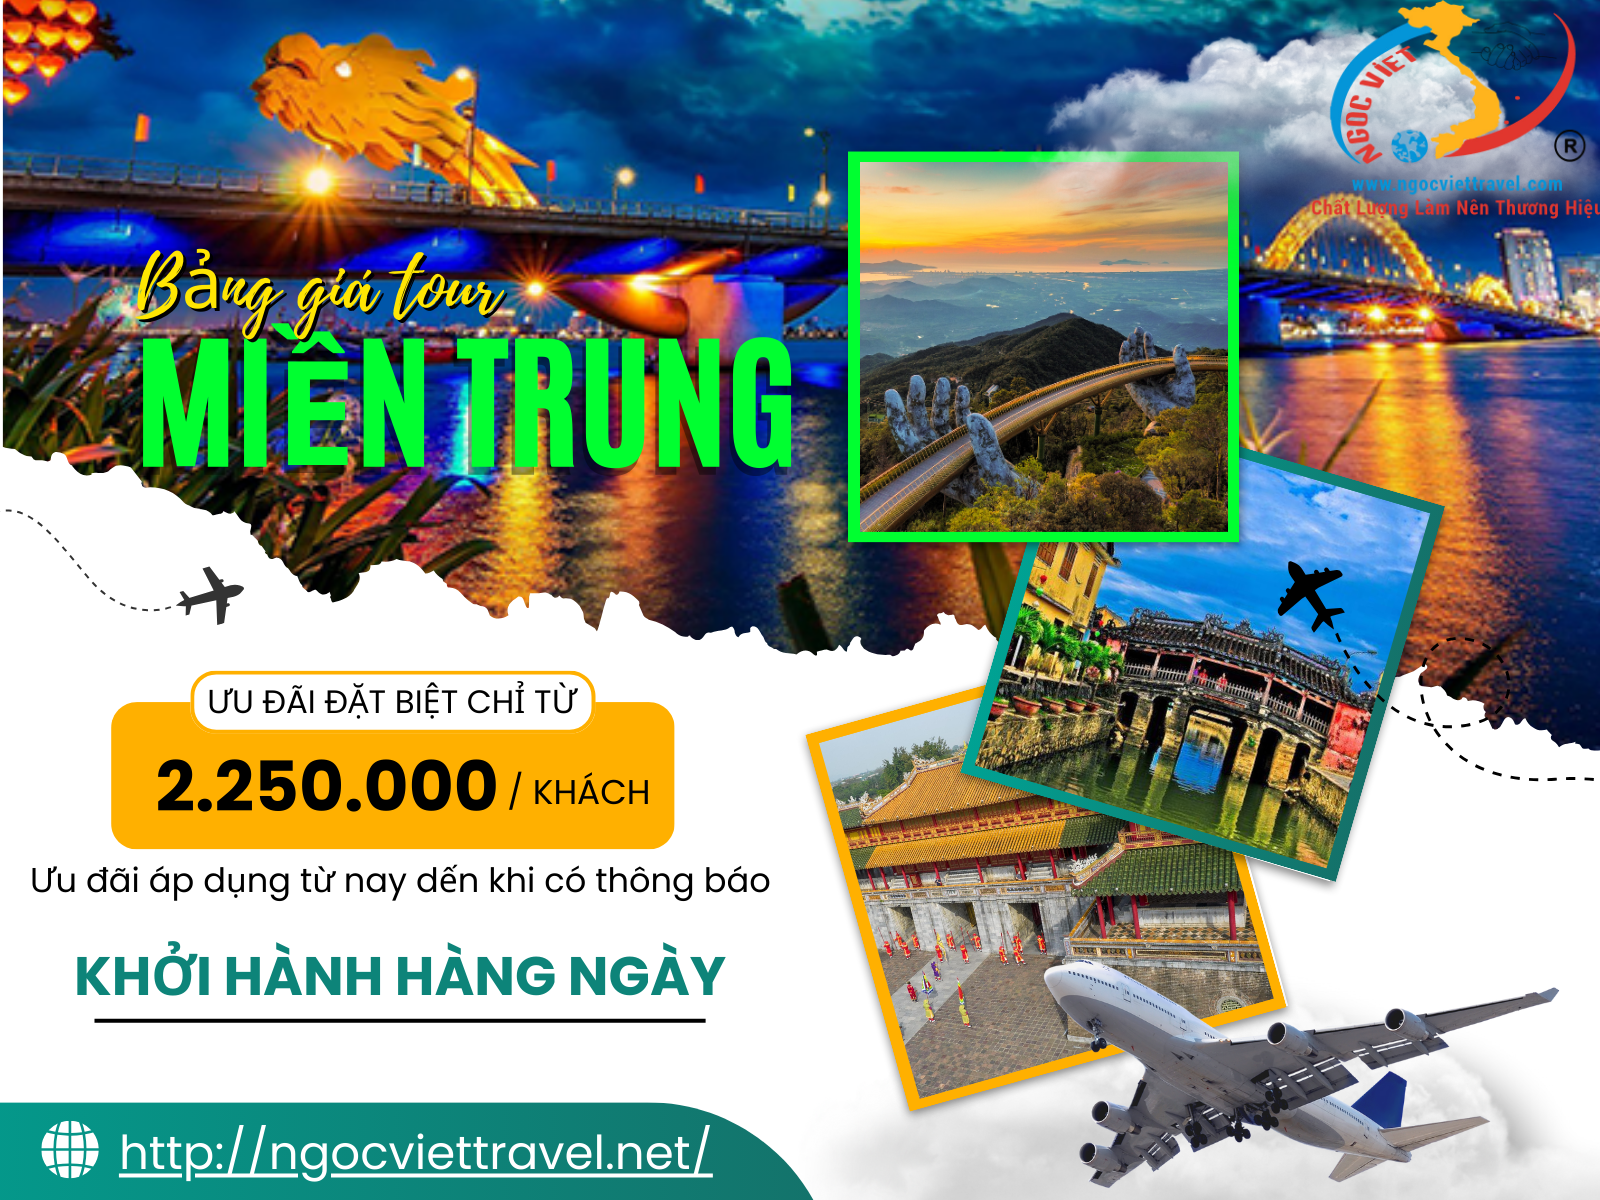 BẢNG GIÁ TOUR GHÉP ĐOÀN MIỀN TRUNG, KHỞI HÀNH MỖI NGÀY - NĂM 2023